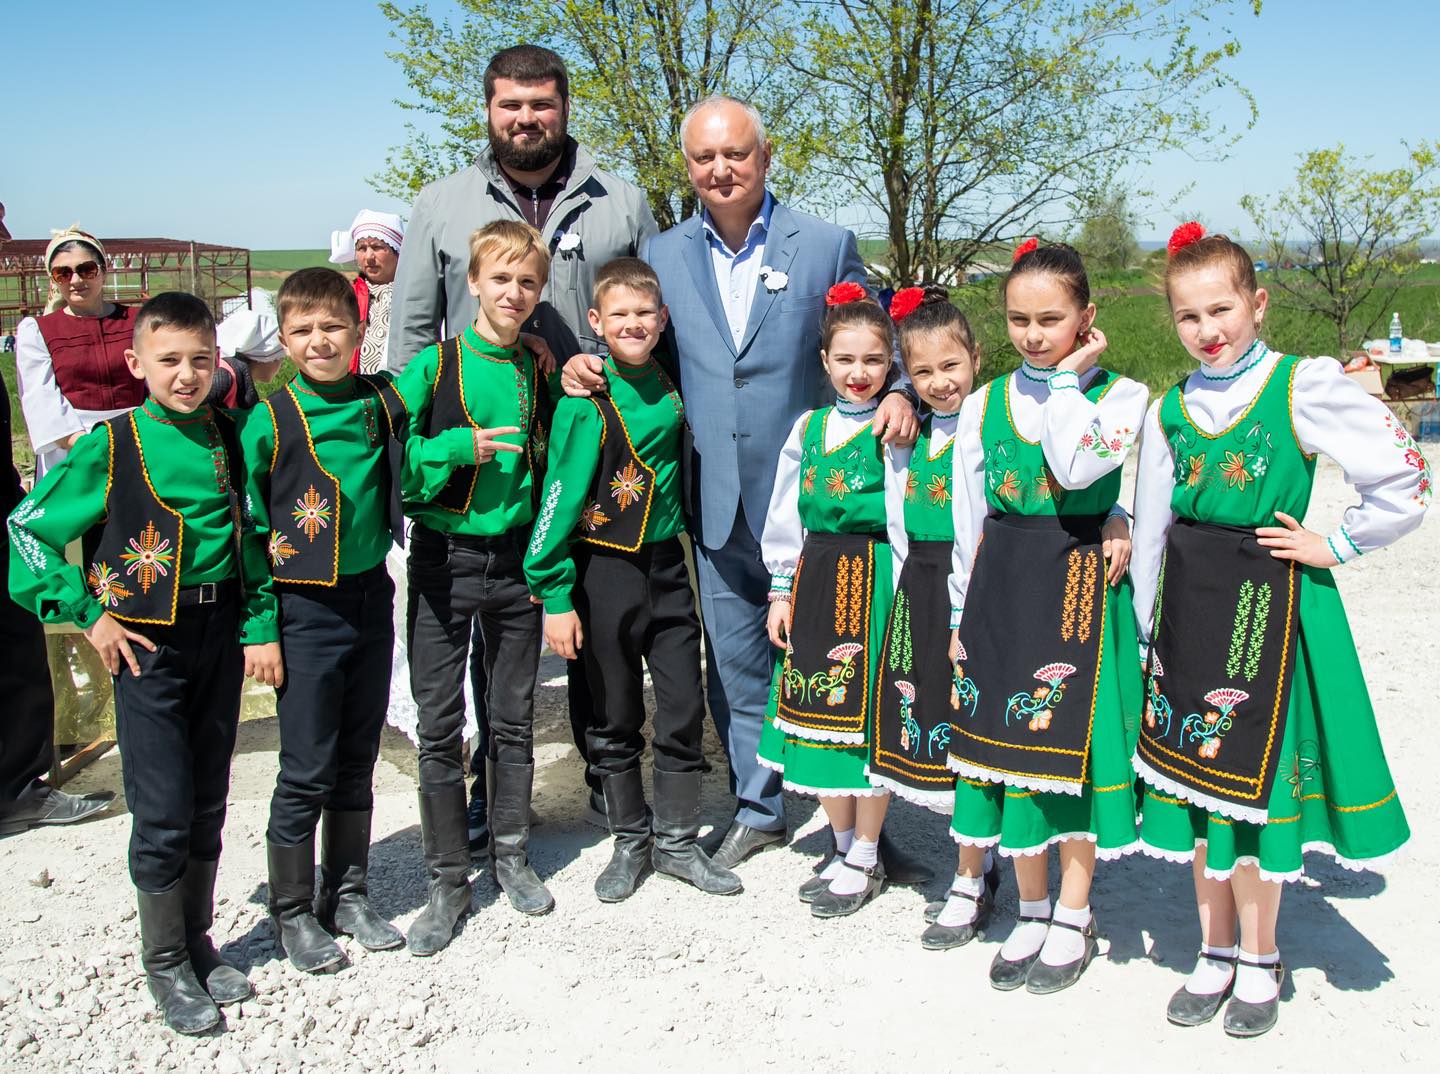 FOTO Găgăuzia marchează astăzi sărbătoarea „Hederlez”. Ce figuri politice au participat la eveniment